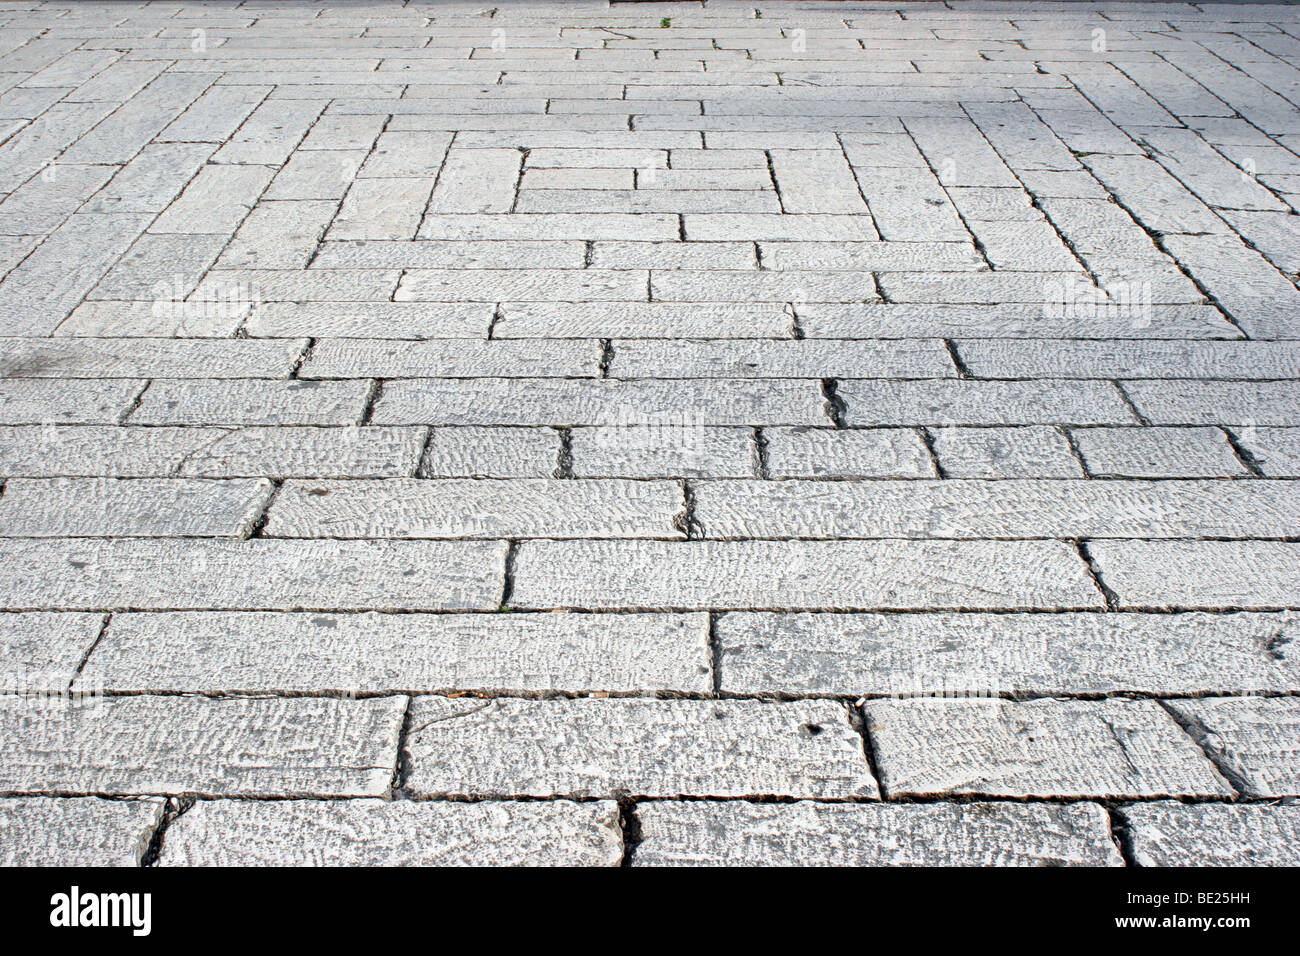 Geometric granite stone paving in Split, Croatia Stock Photo